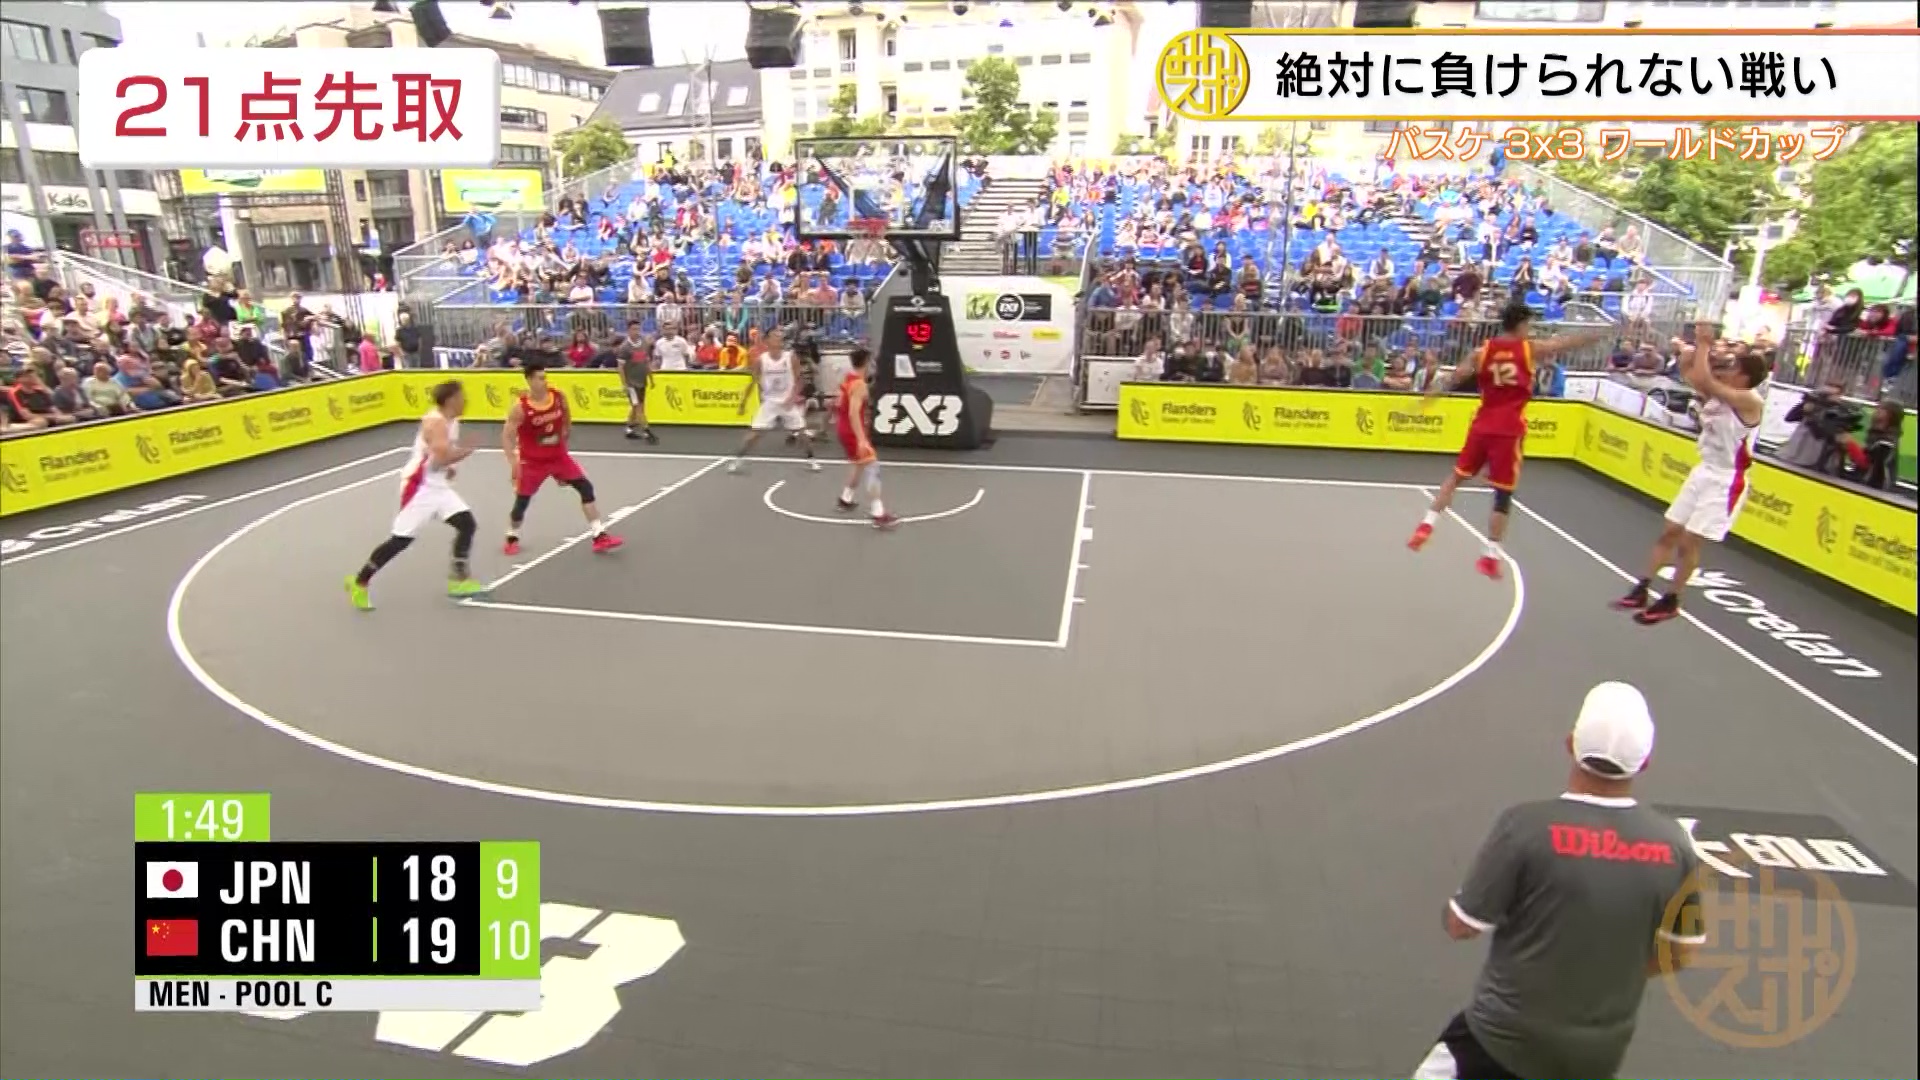 【男子バスケ】3×3 世界一決定戦 日本は予選敗退